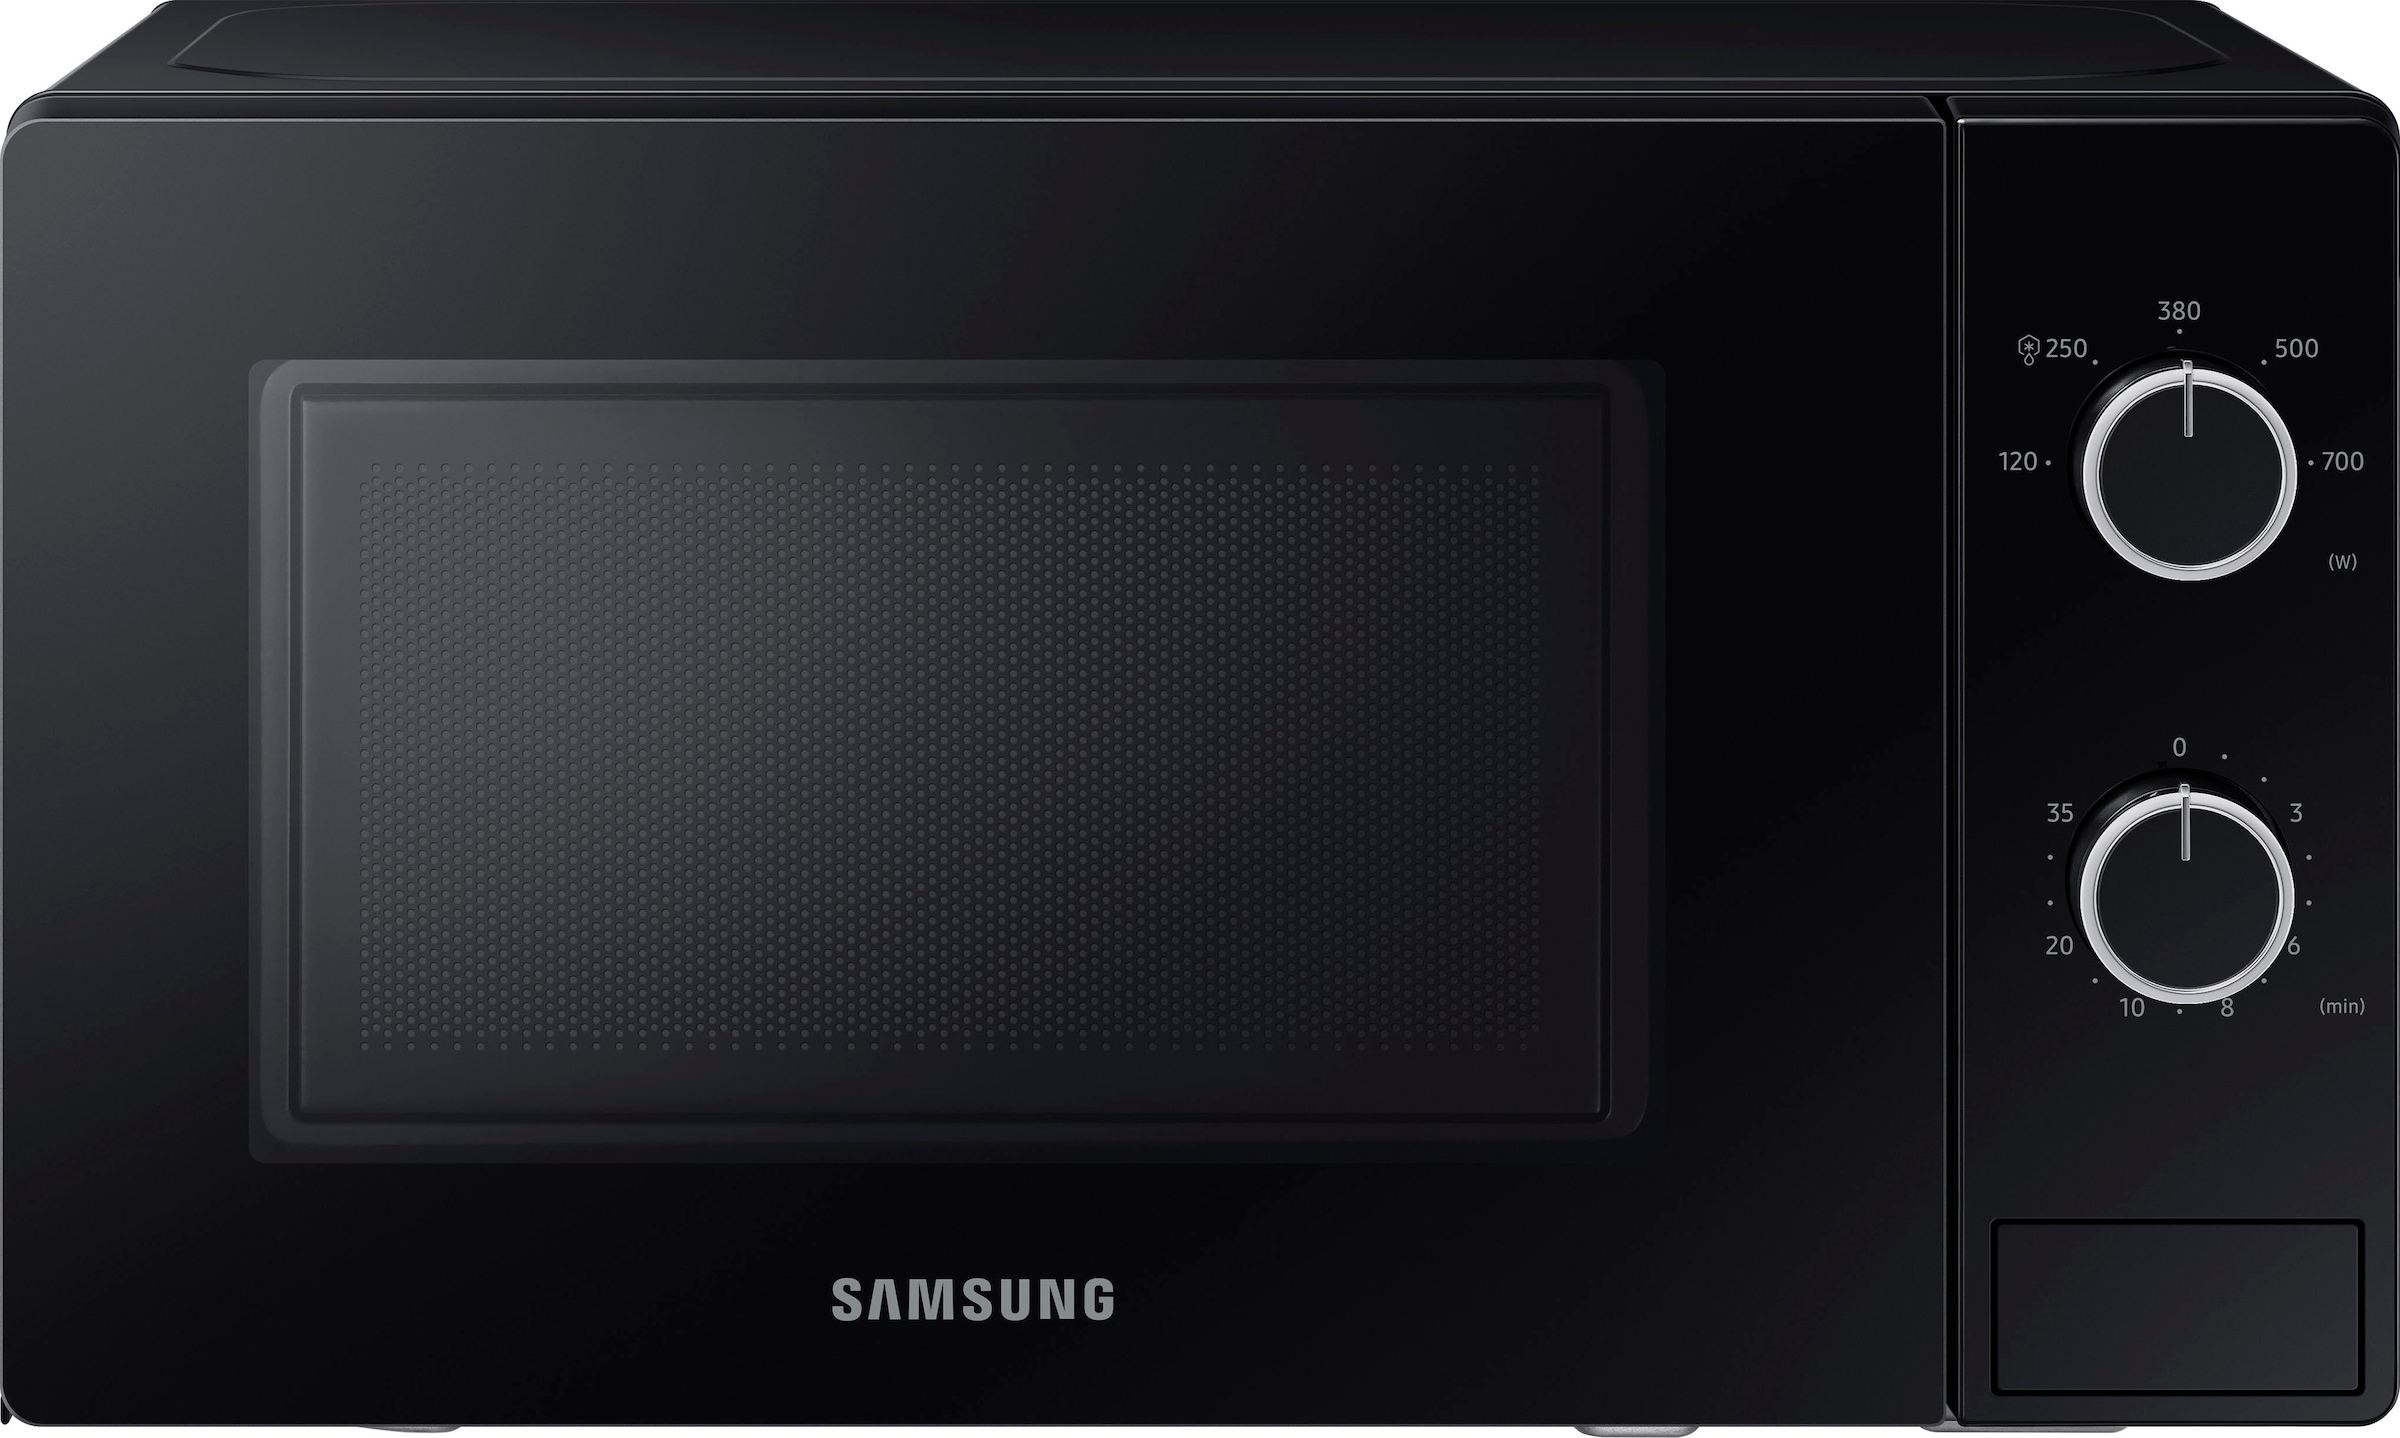 Samsung Mikrowelle »MS20A3010AL/EG«, Mikrowelle, 700 W, Einfache Handhabung in schickem Design